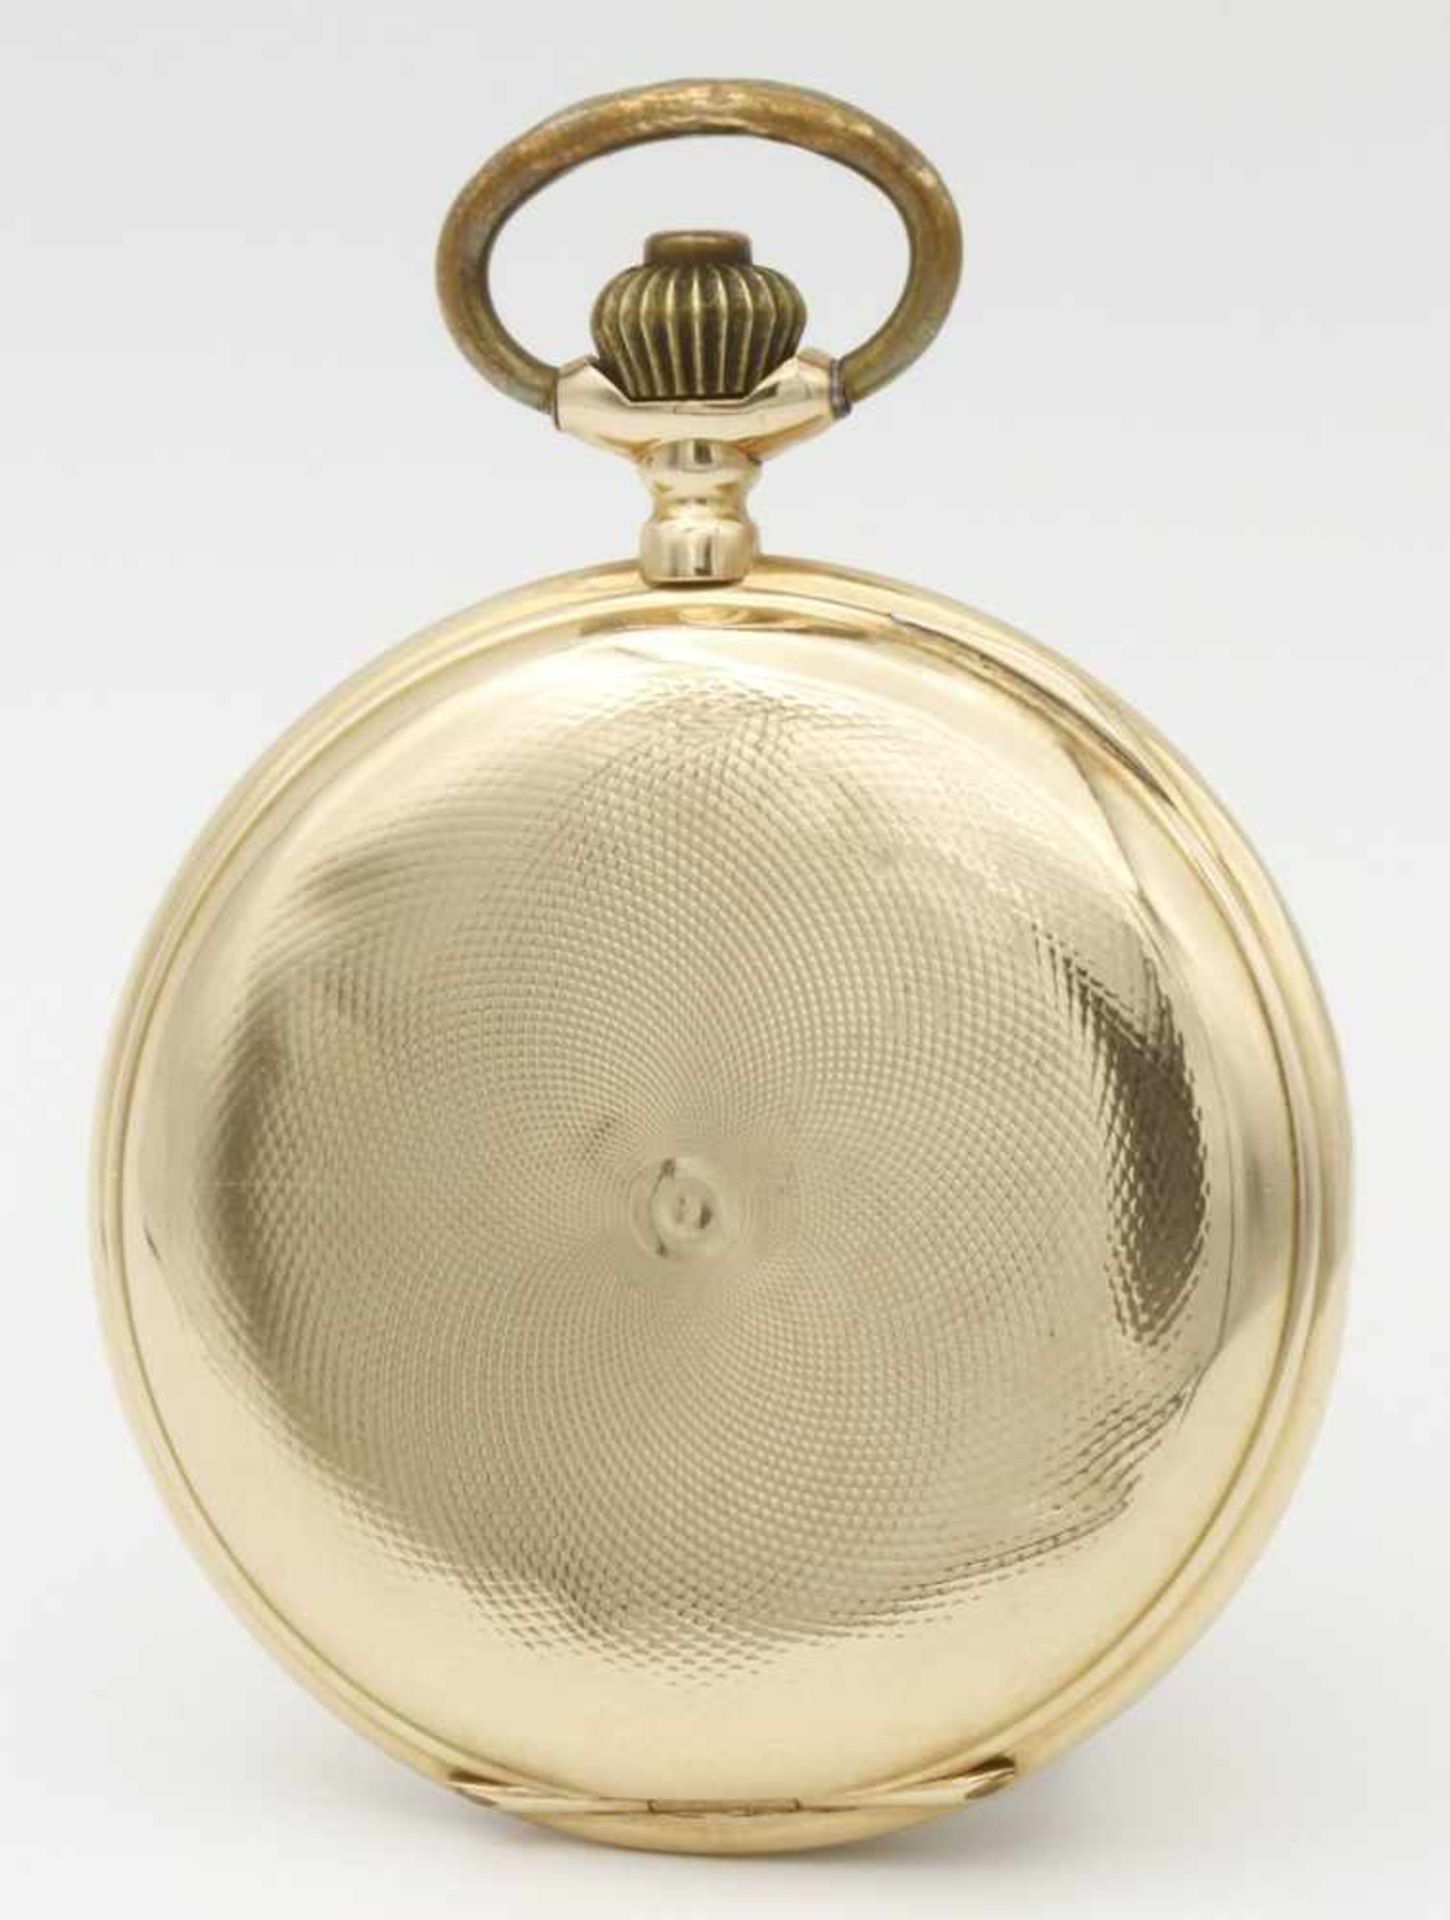 Goldene Savonette Herrentaschenuhr, um 1900 - Bild 3 aus 5